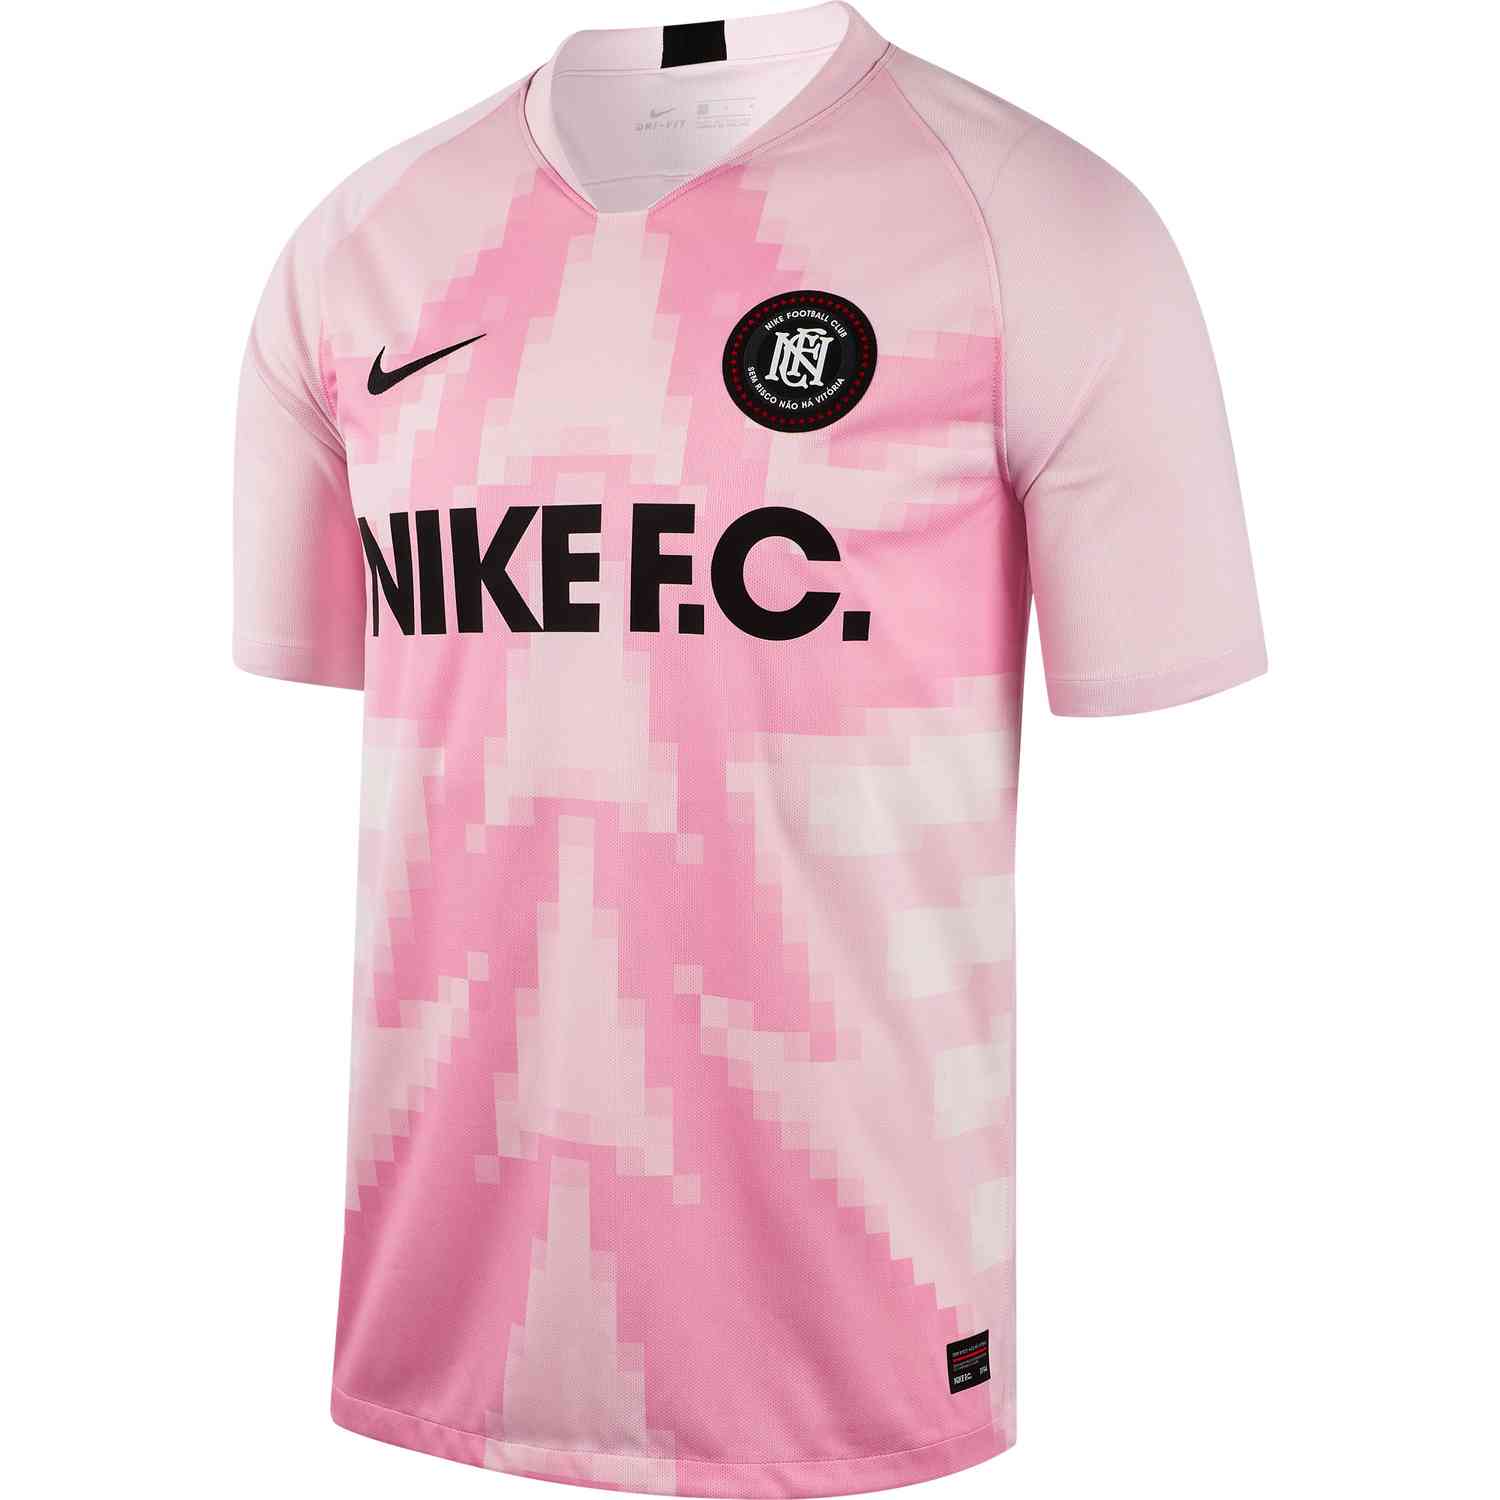 Nike FC Jersey - Pink Foam - SoccerPro